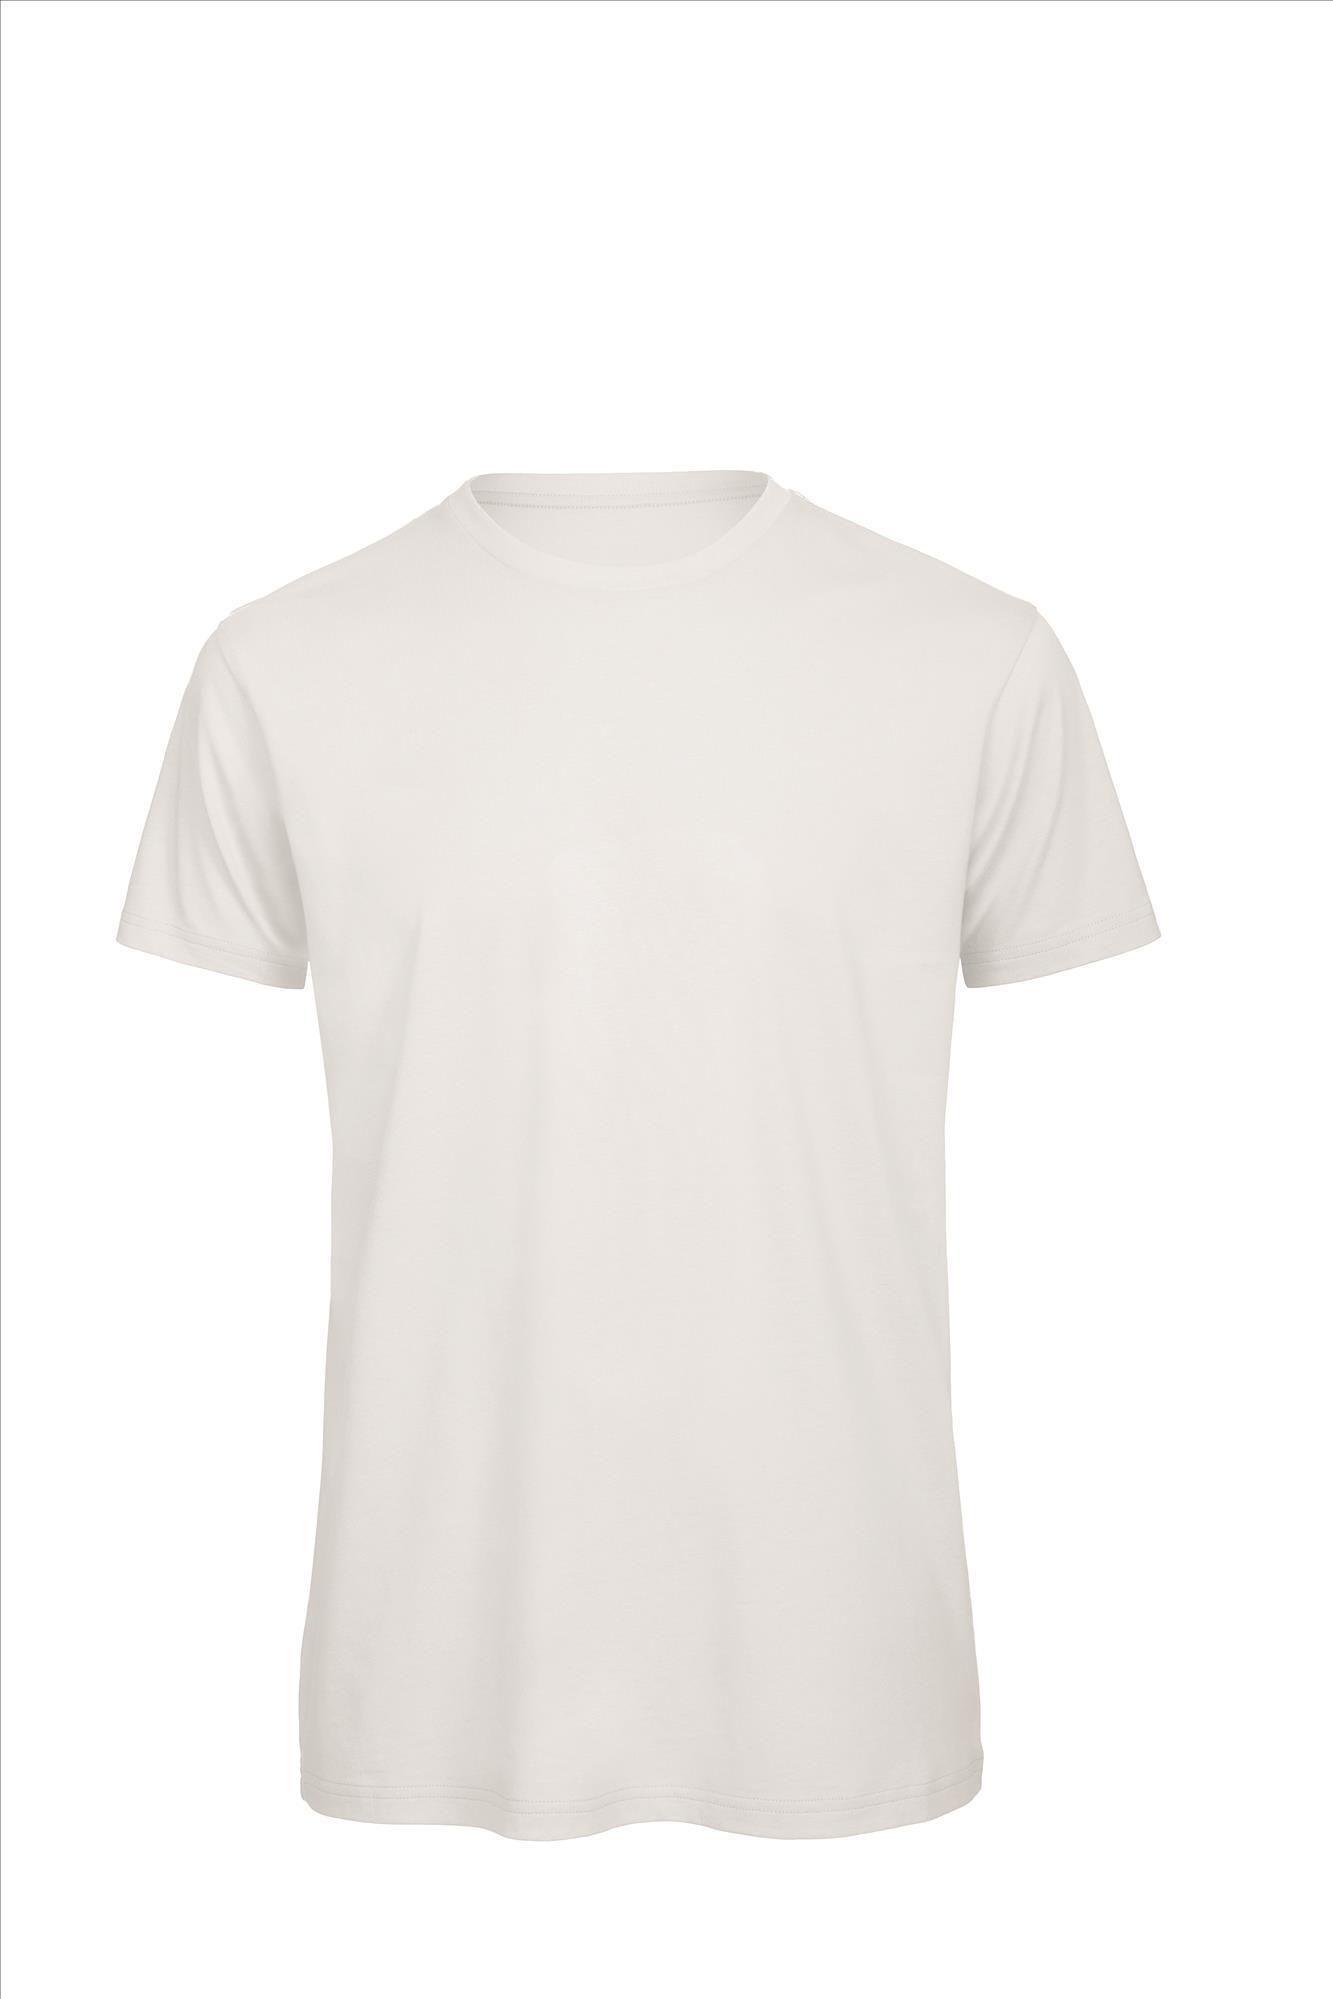 Heren T-shirt wit te personaliseren bedrukbaar duurzaam shirt